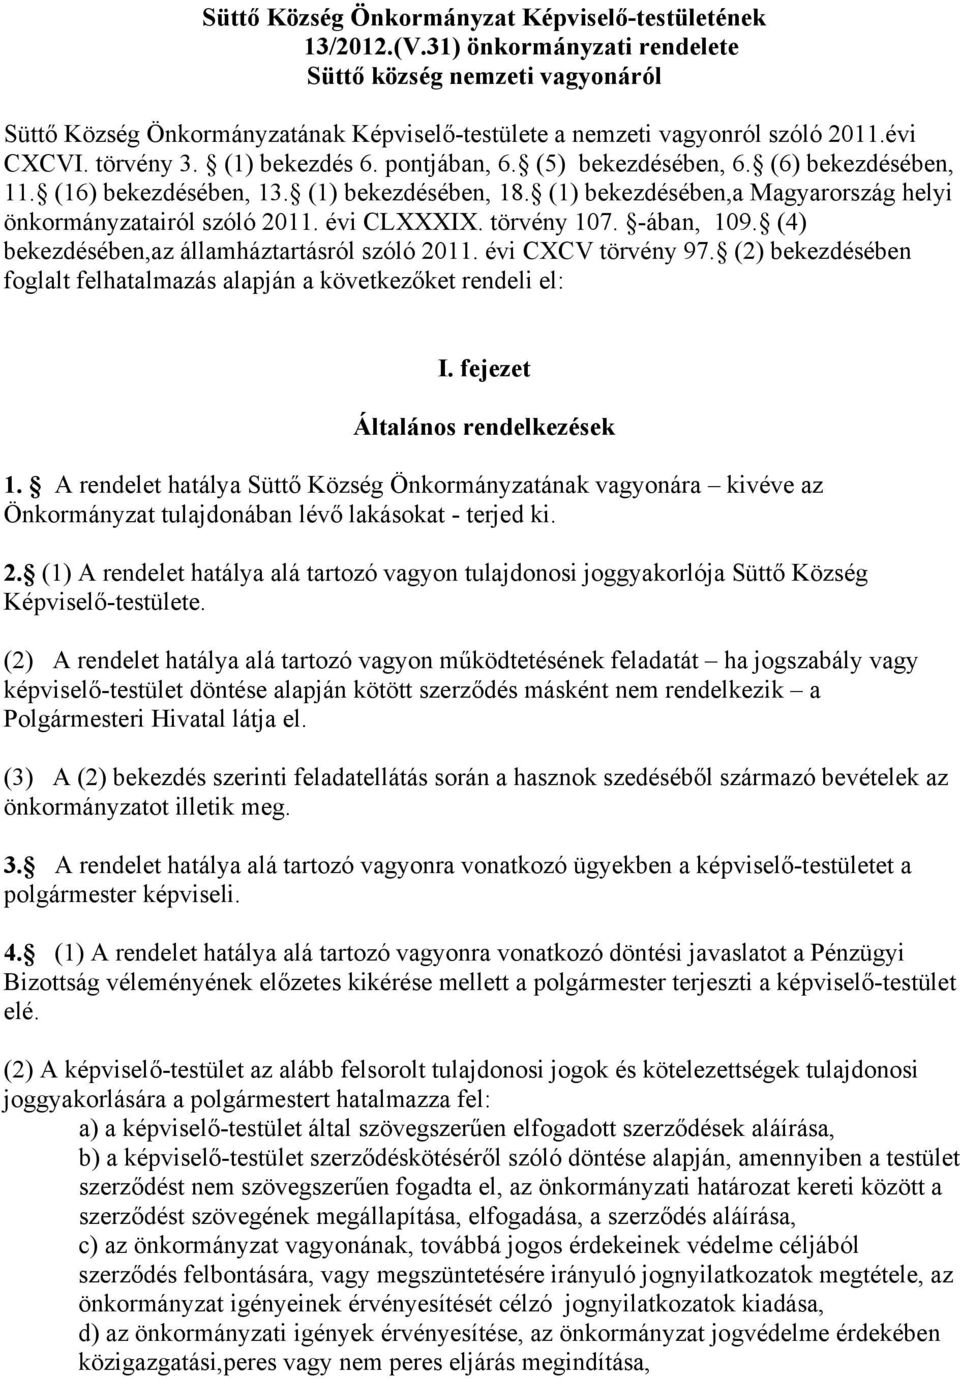 (5) bekezdésében, 6. (6) bekezdésében, 11. (16) bekezdésében, 13. (1) bekezdésében, 18. (1) bekezdésében,a Magyarország helyi önkormányzatairól szóló 2011. évi CLXXXIX. törvény 107. -ában, 109.